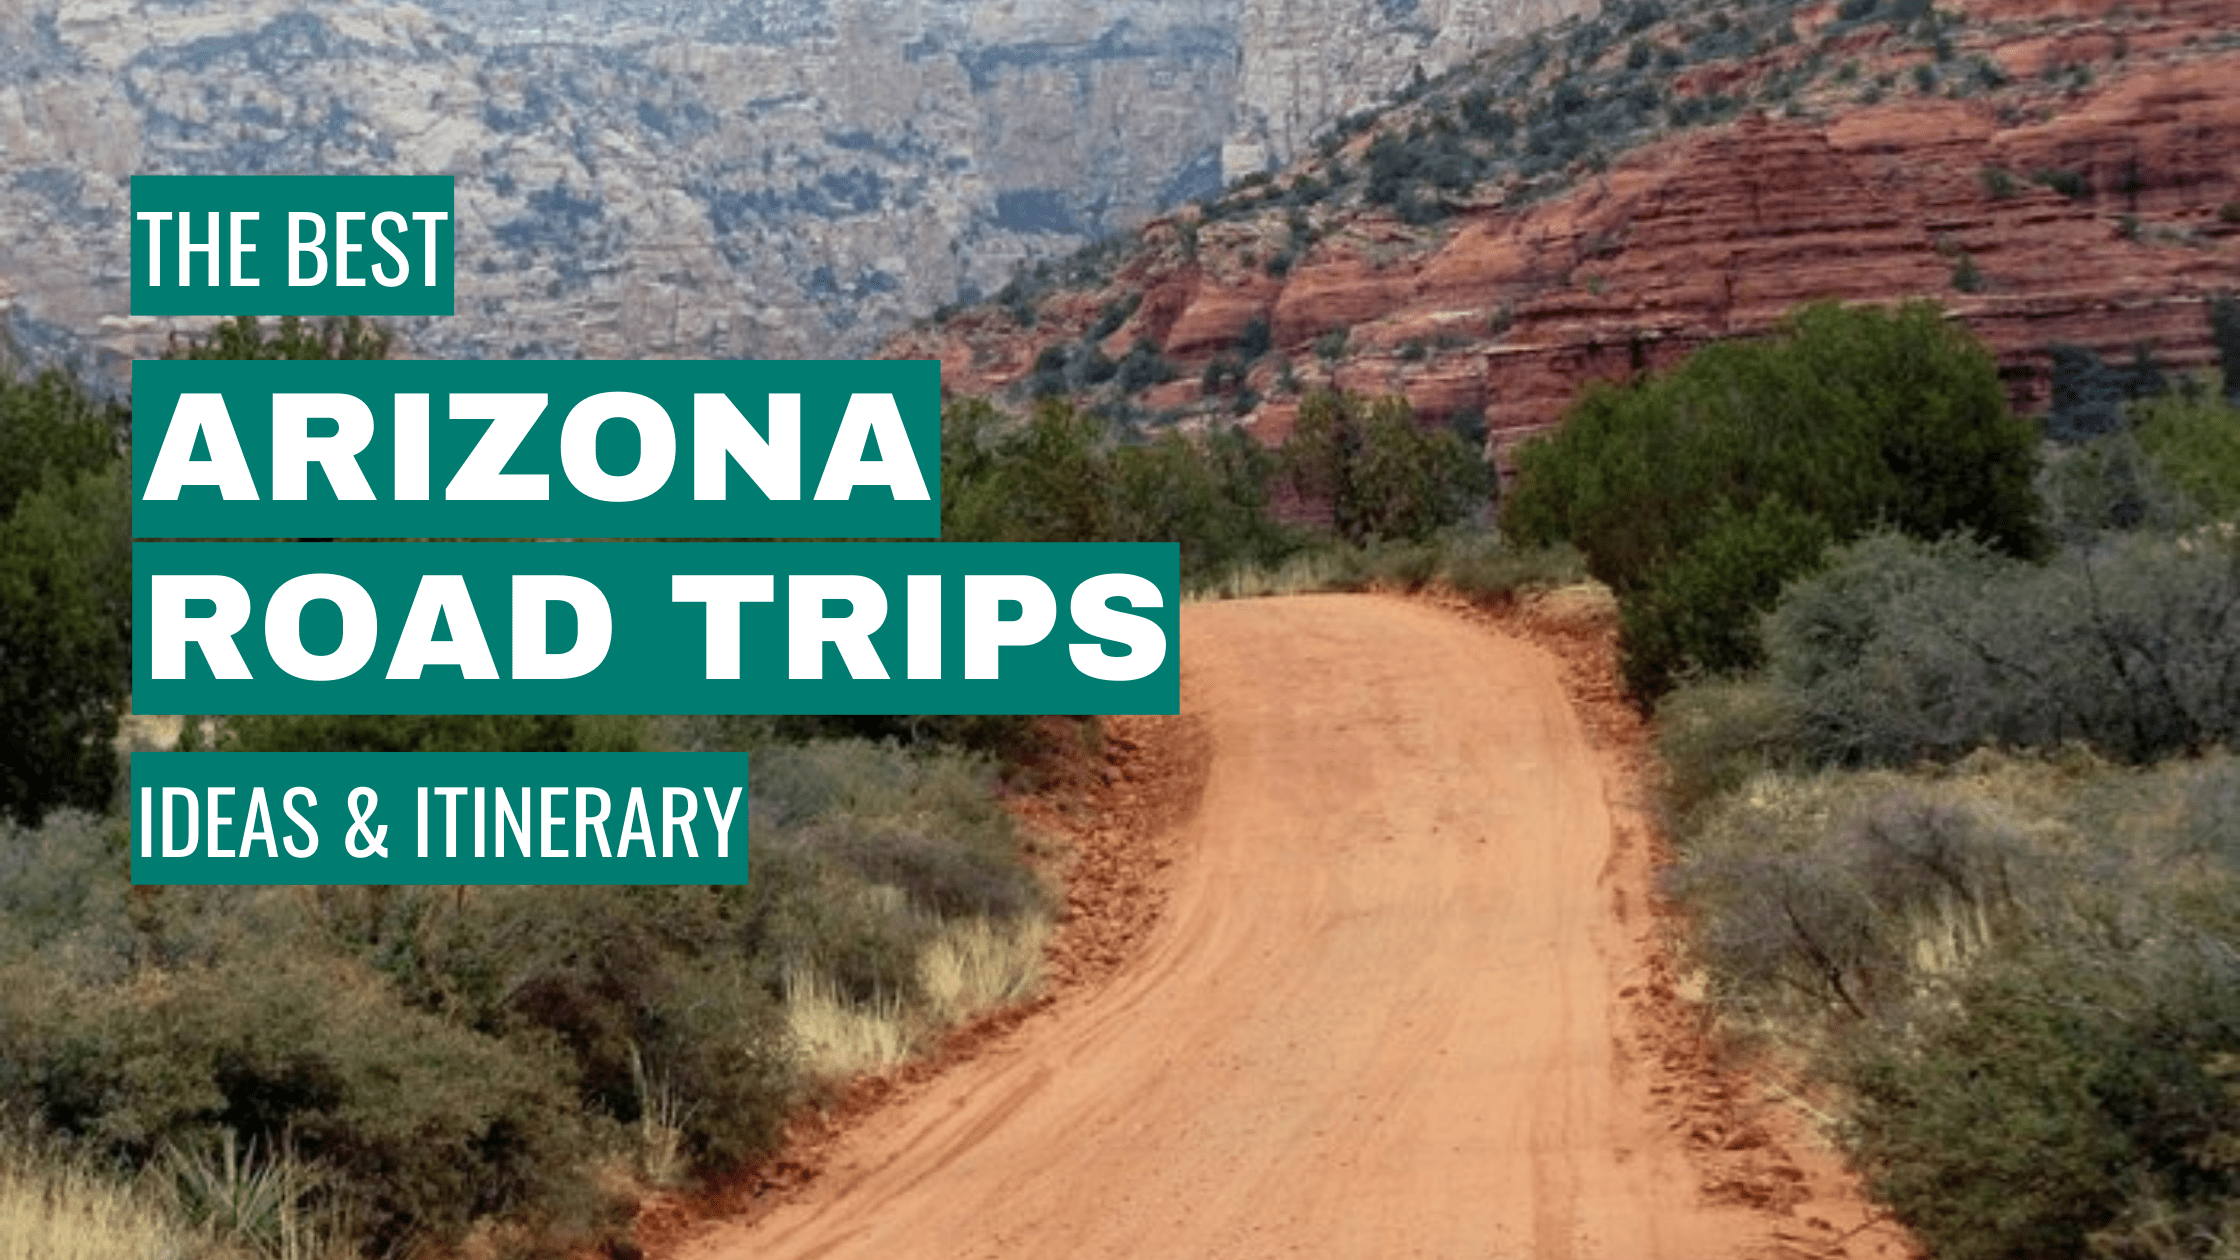 Arizona Road Trip Ideas: 11 Best Road Trips + Itinerary